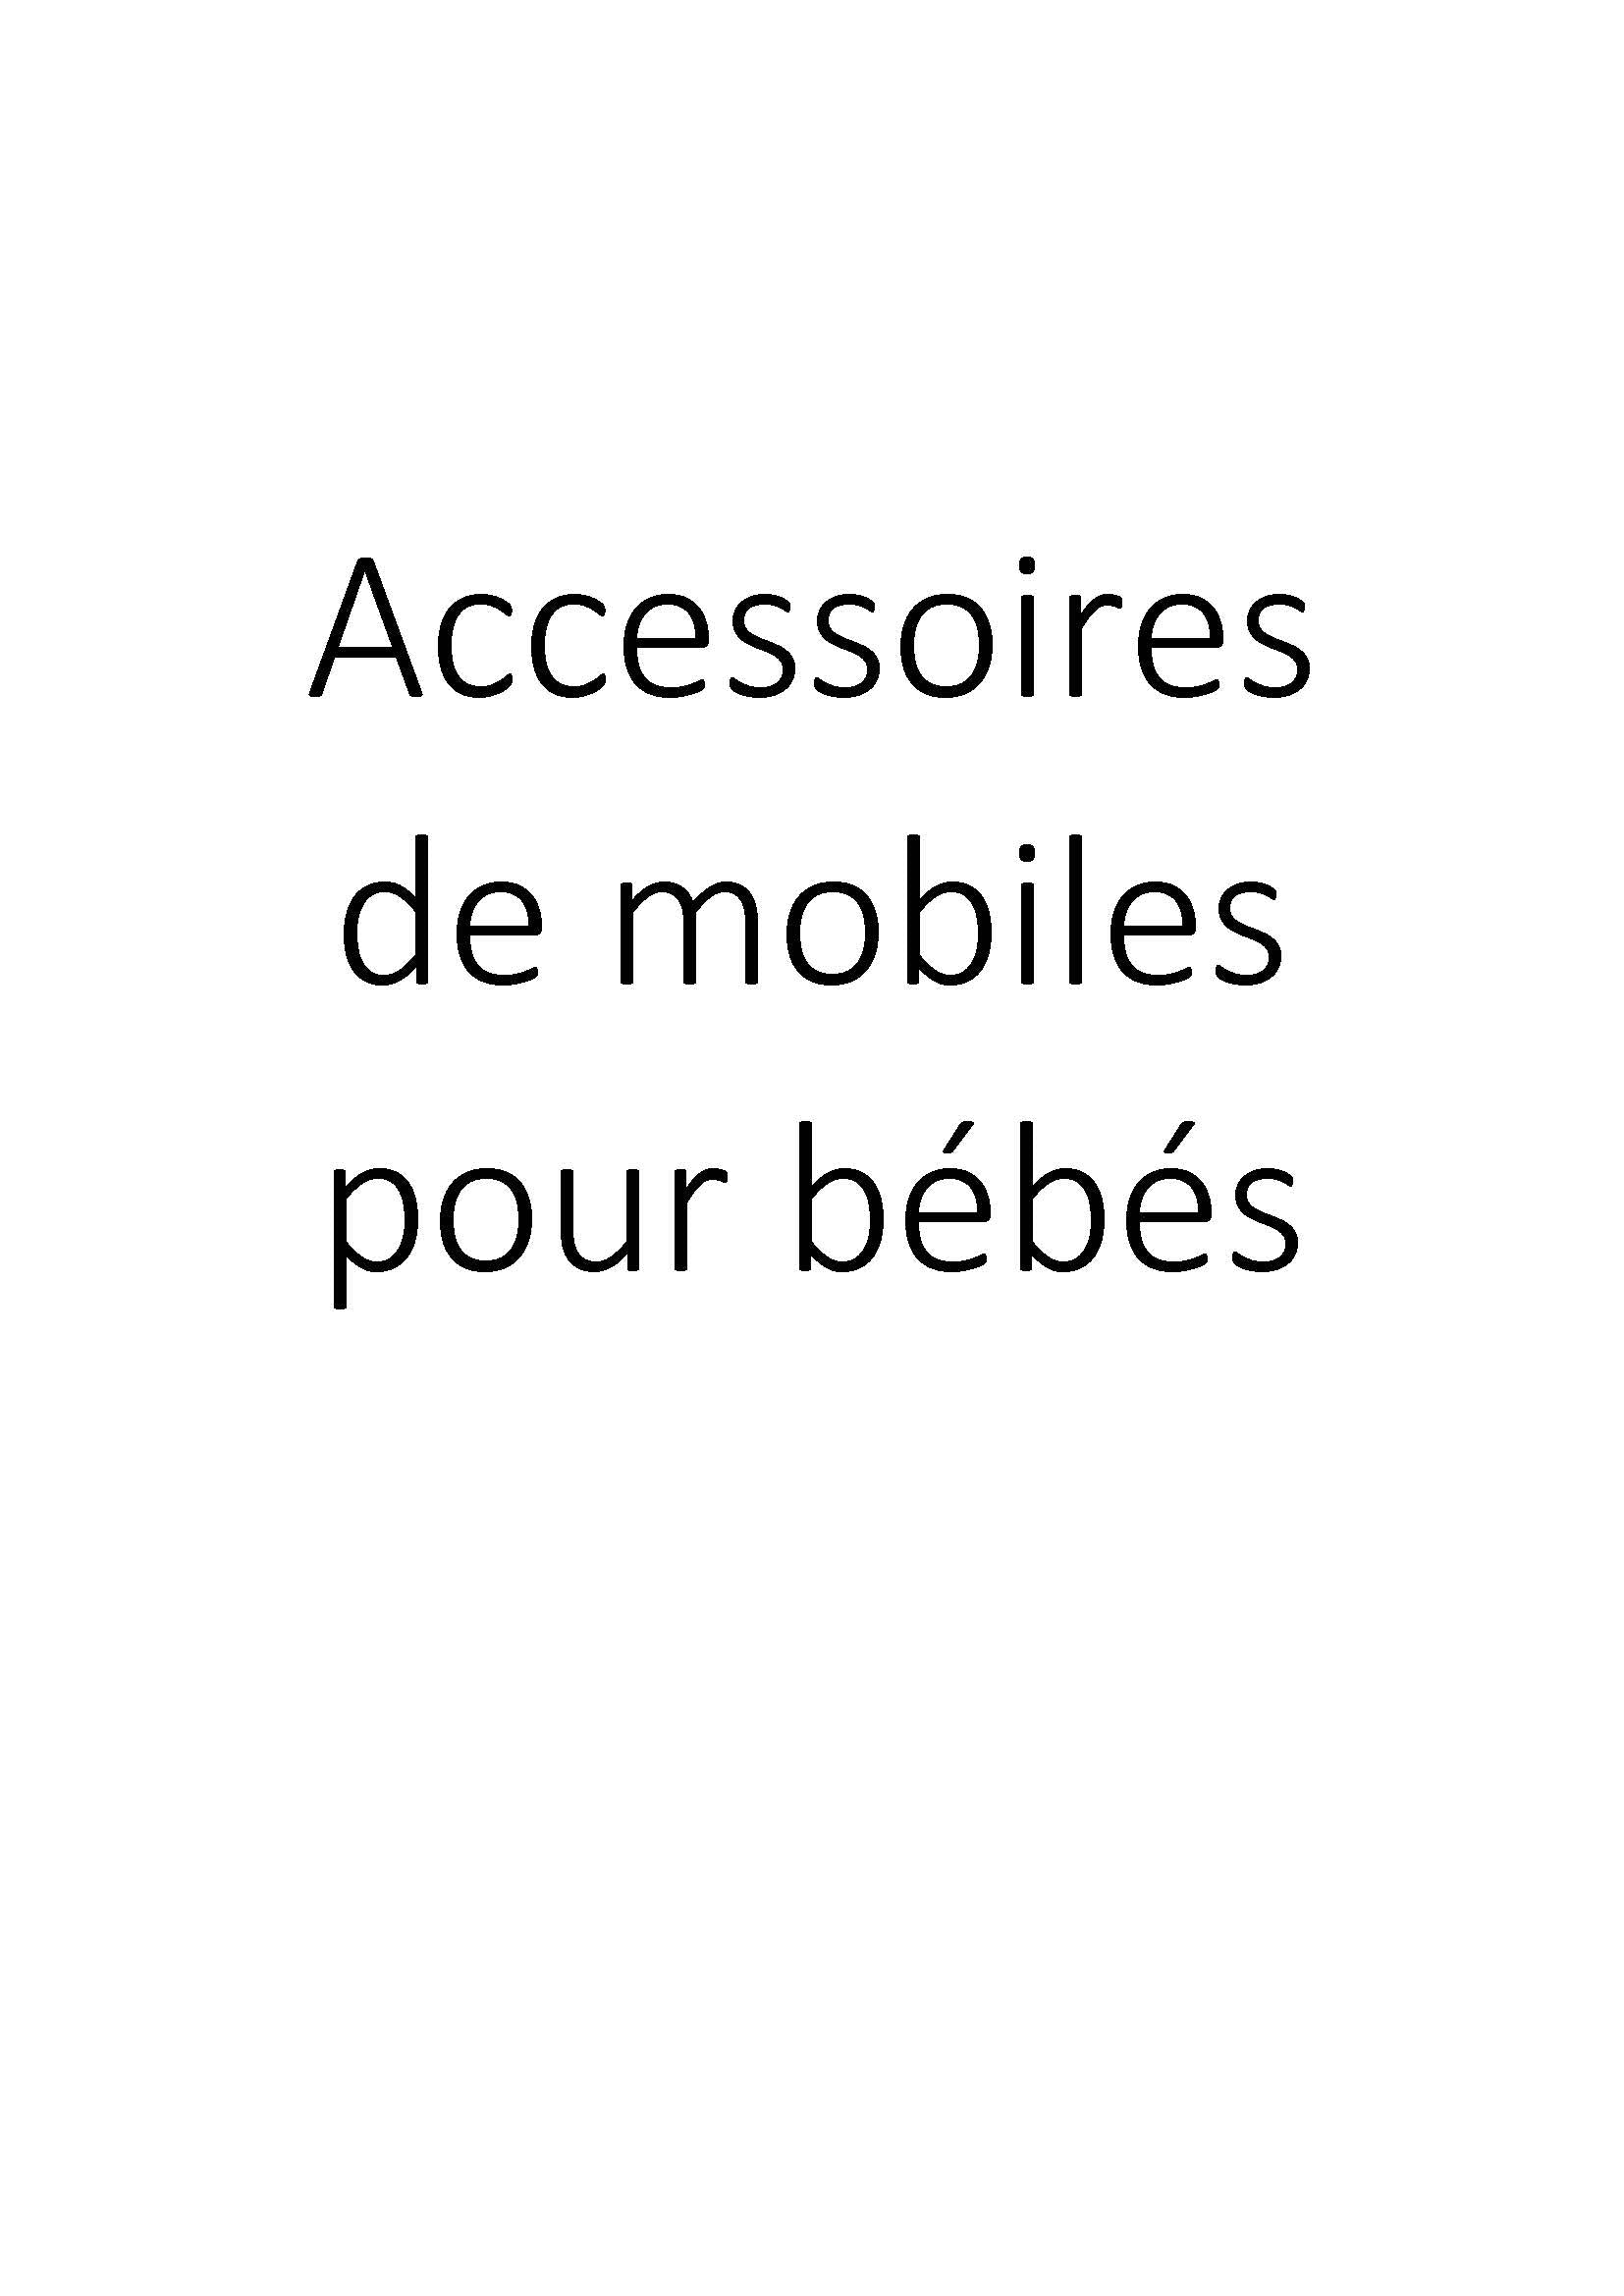 Accessoires de mobiles pour bébés clicktofournisseur.com